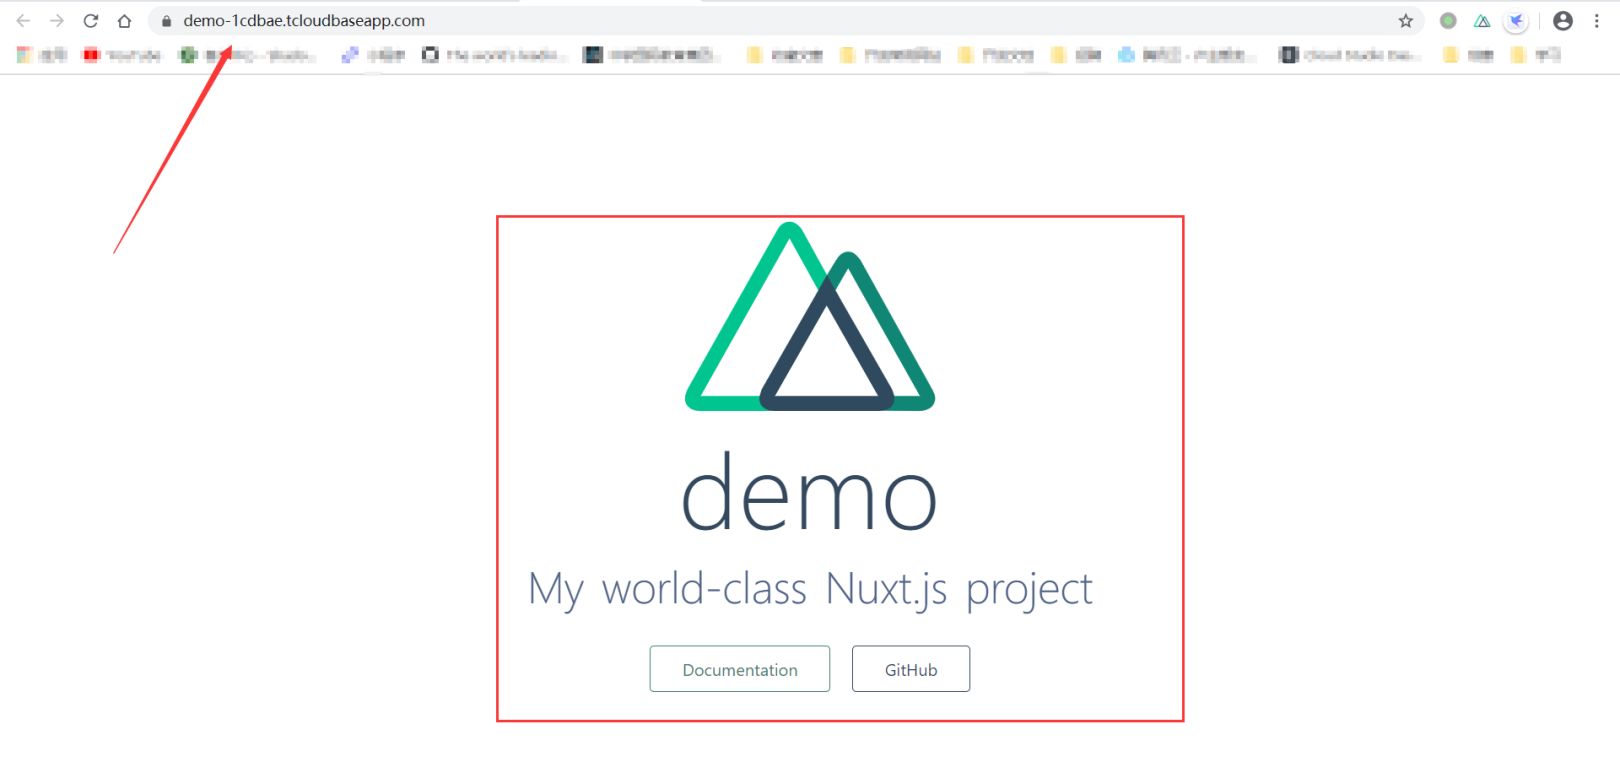 Cloud Development Deploy Nuxt .js projects